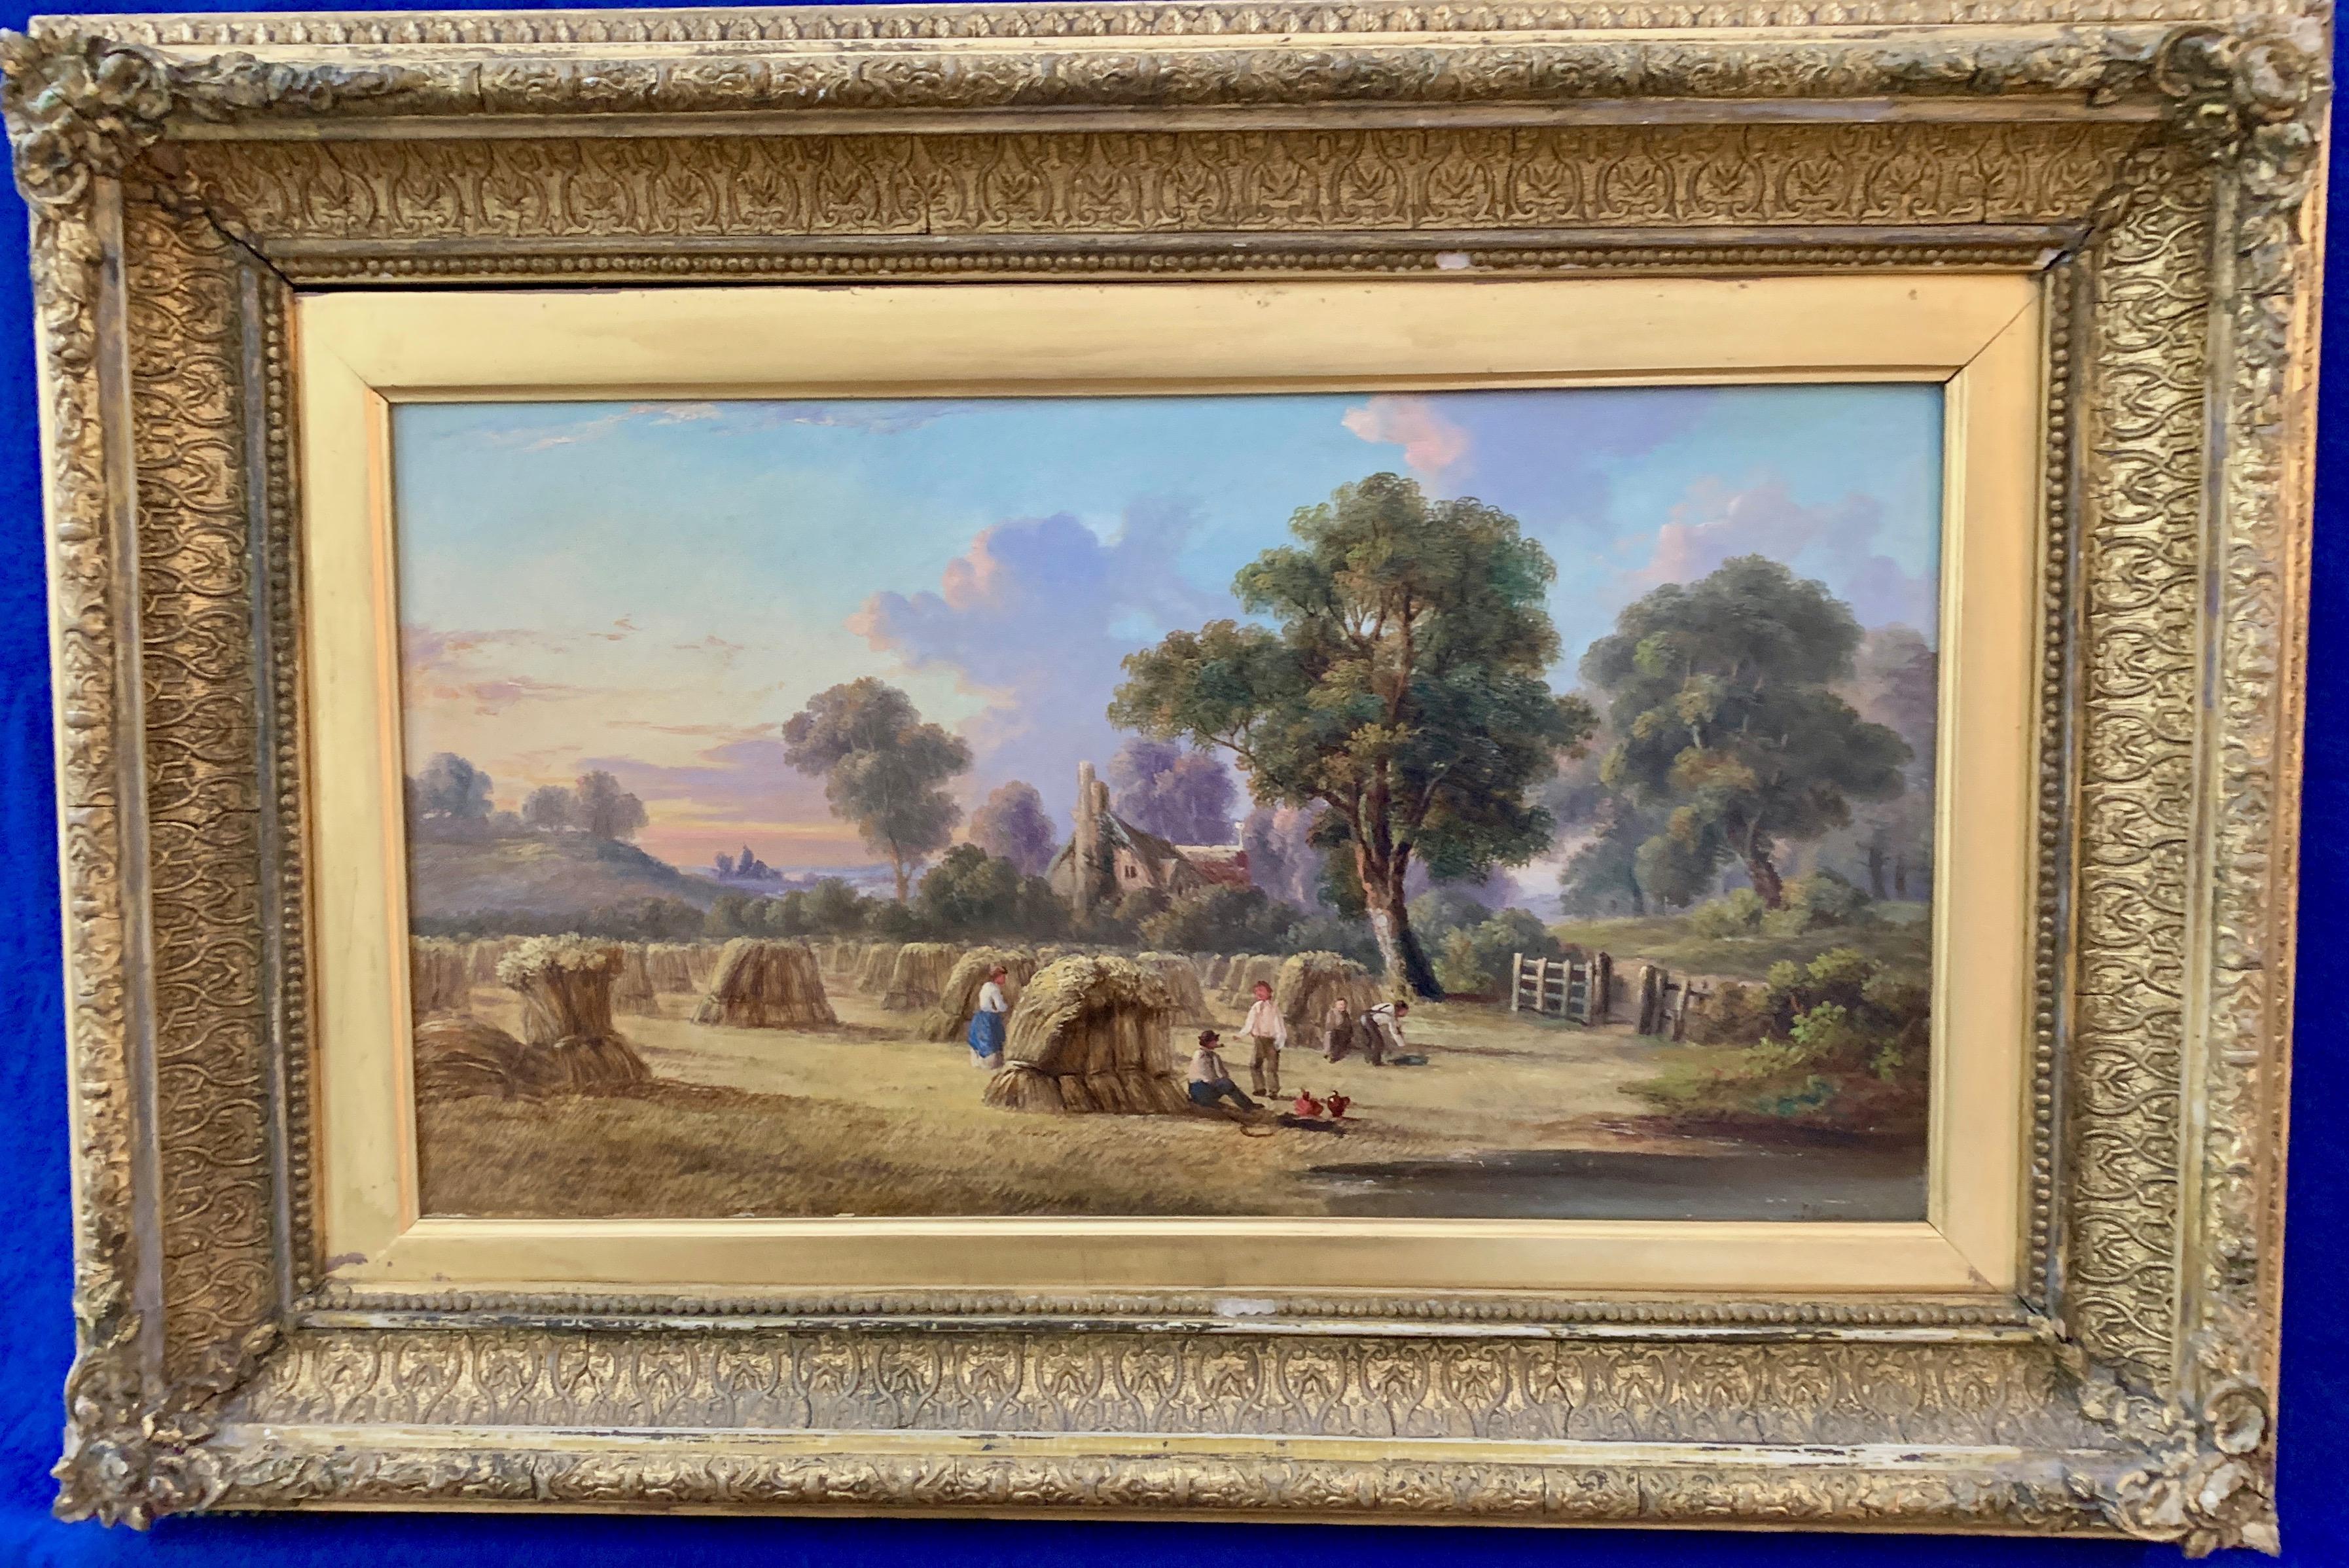 Landscape Painting John Mundell - Paysage de moisson d'été victorien anglais ancien du 19e siècle, avec des personnages.